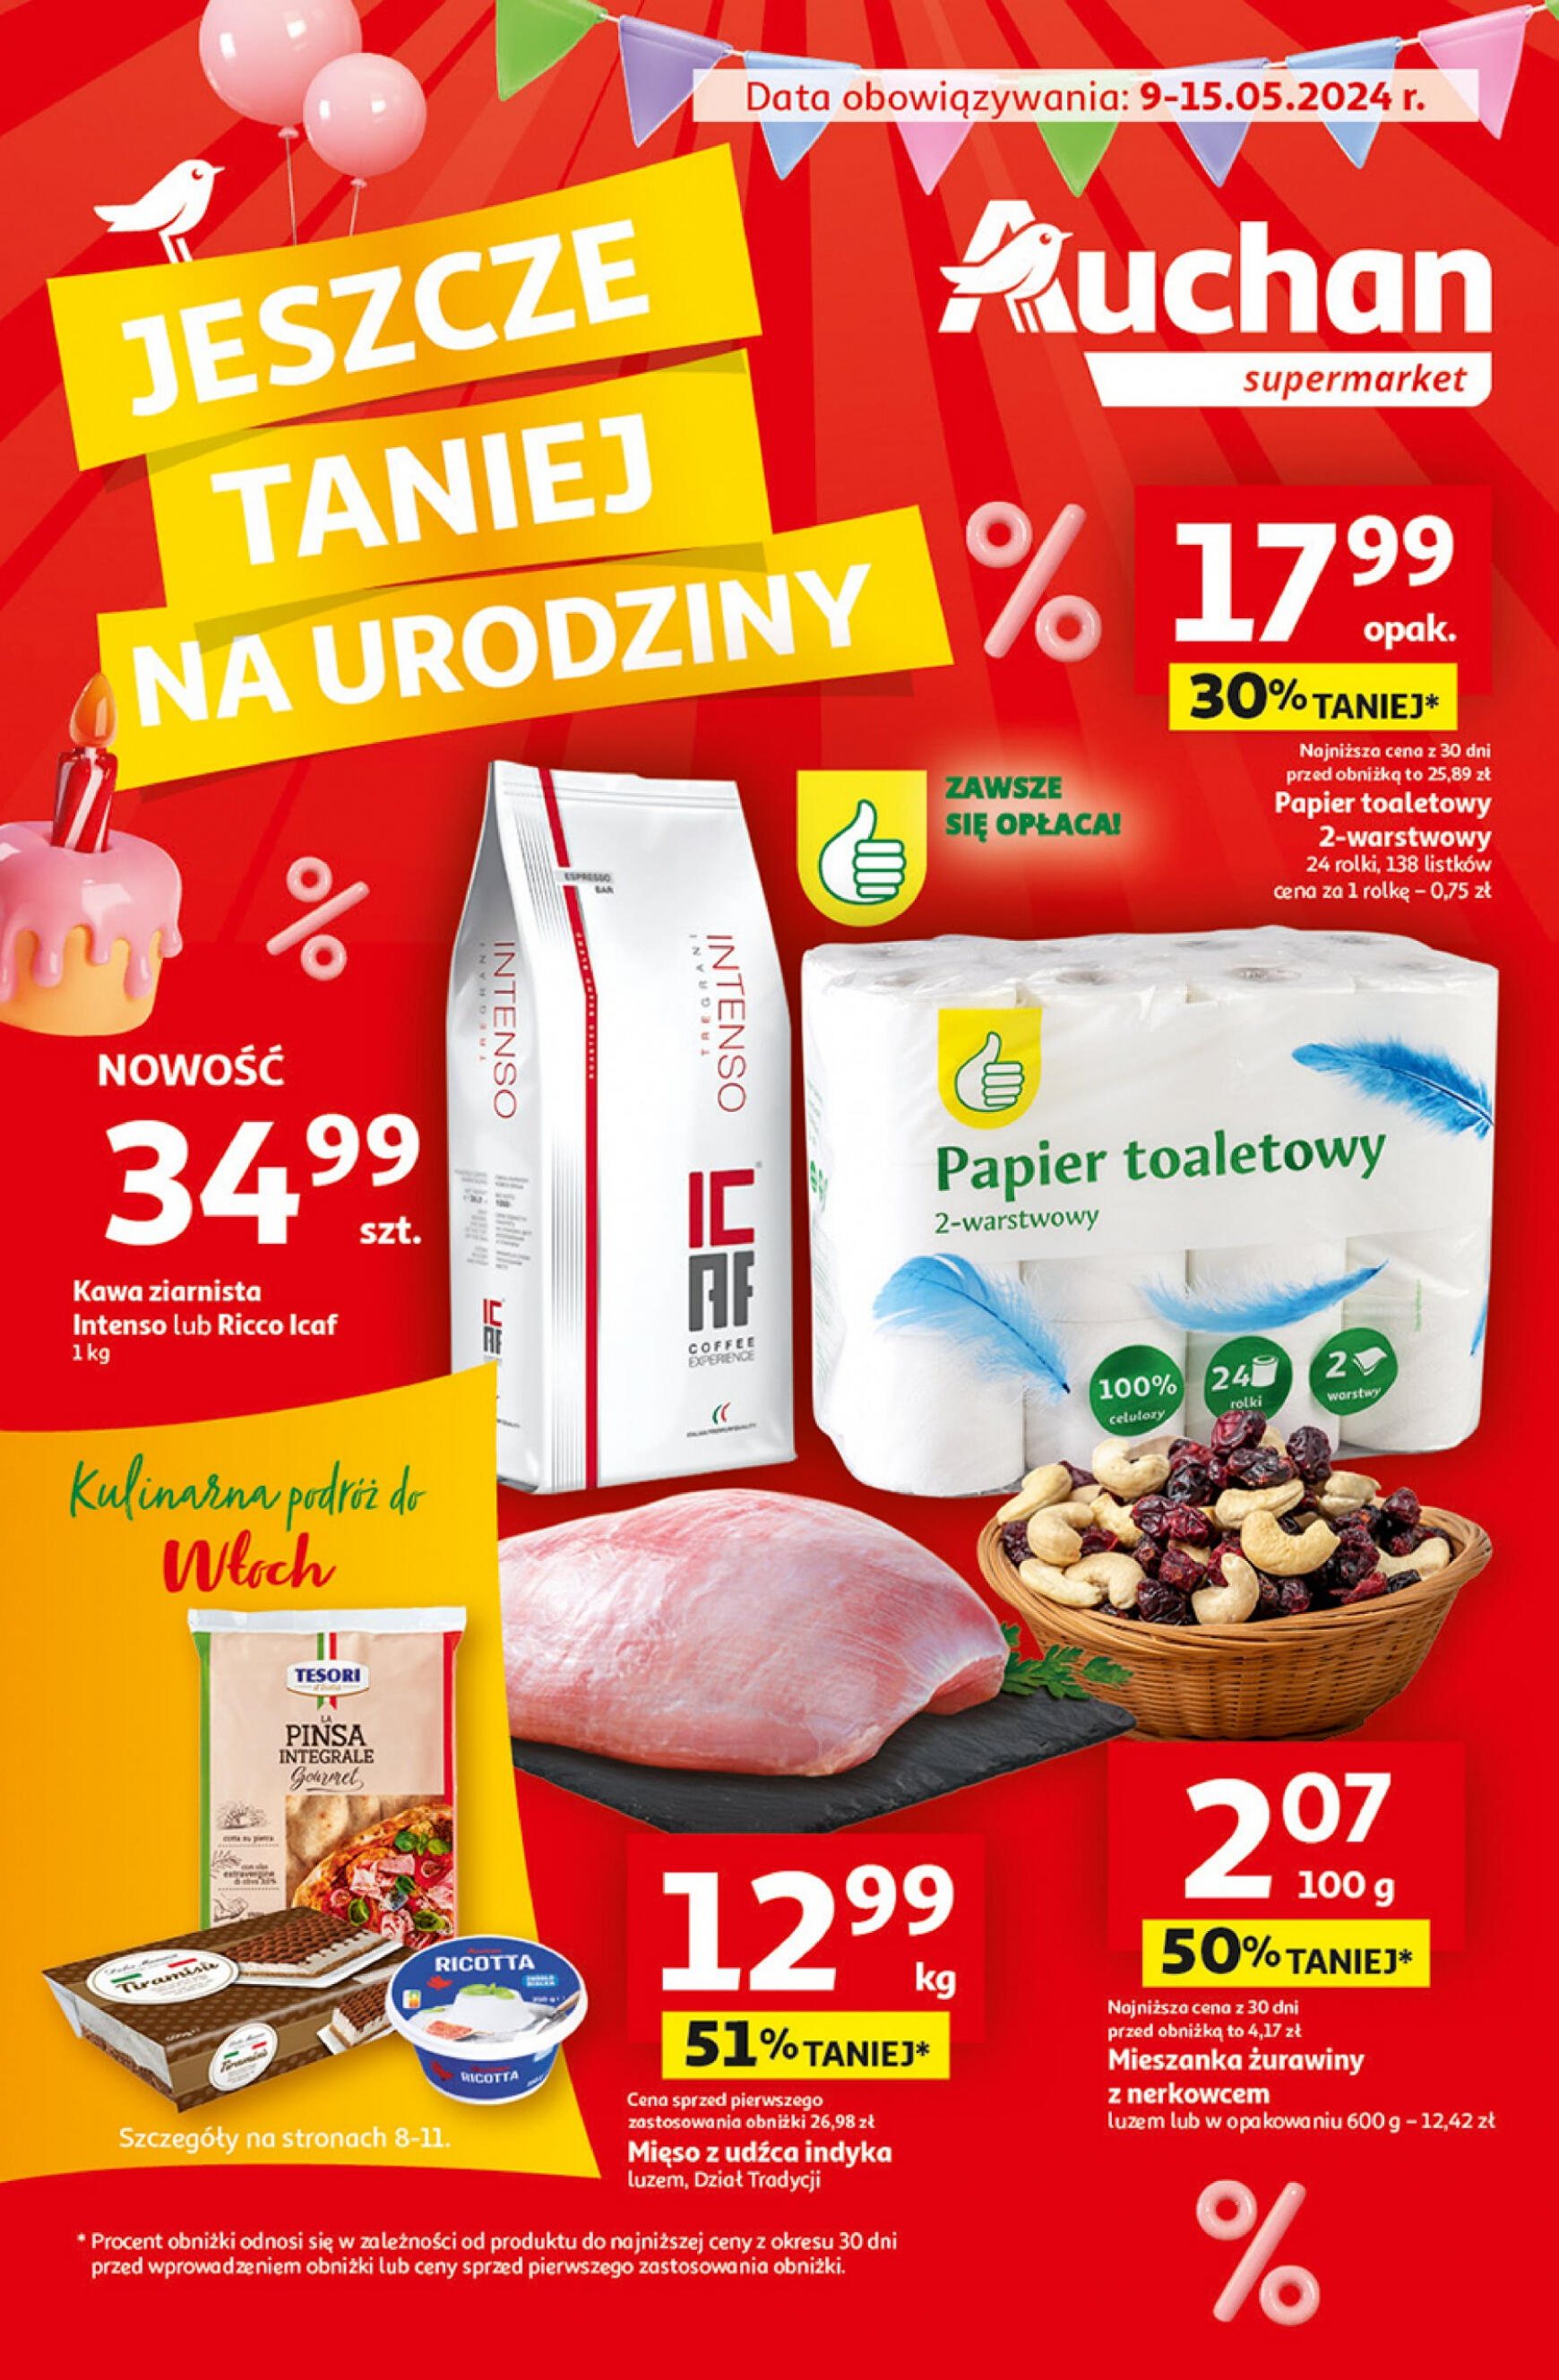 auchan - Supermarket Auchan - Gazetka Jeszcze taniej na urodziny gazetka aktualna ważna od 09.05. - 15.05.